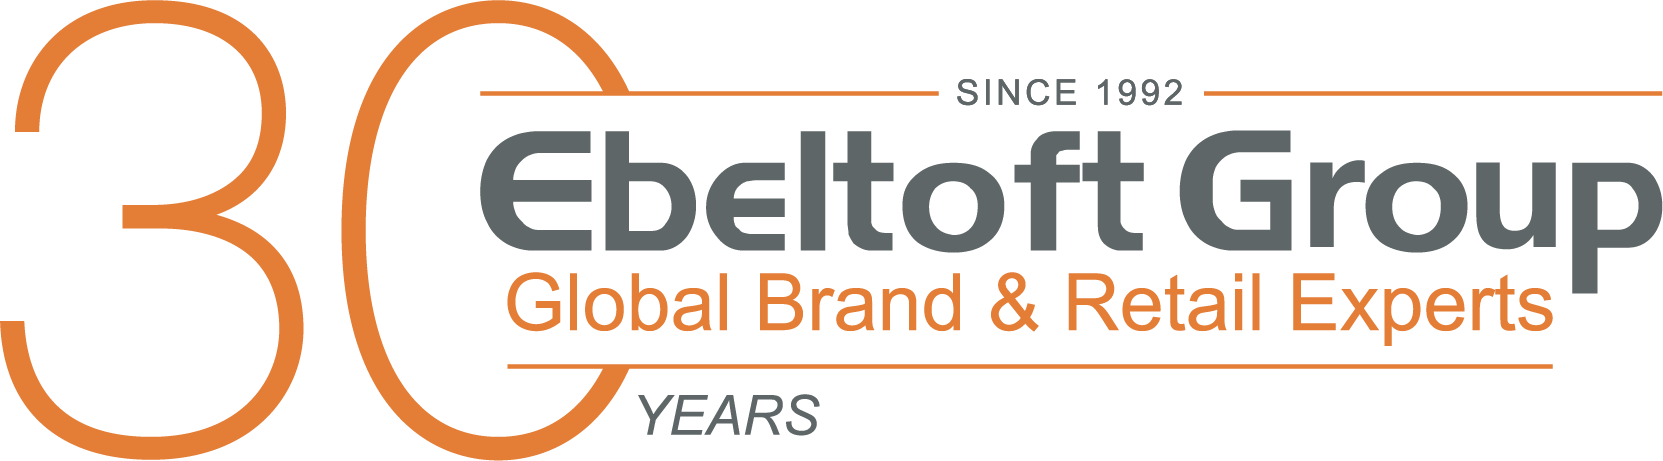 Ebeltoft Group